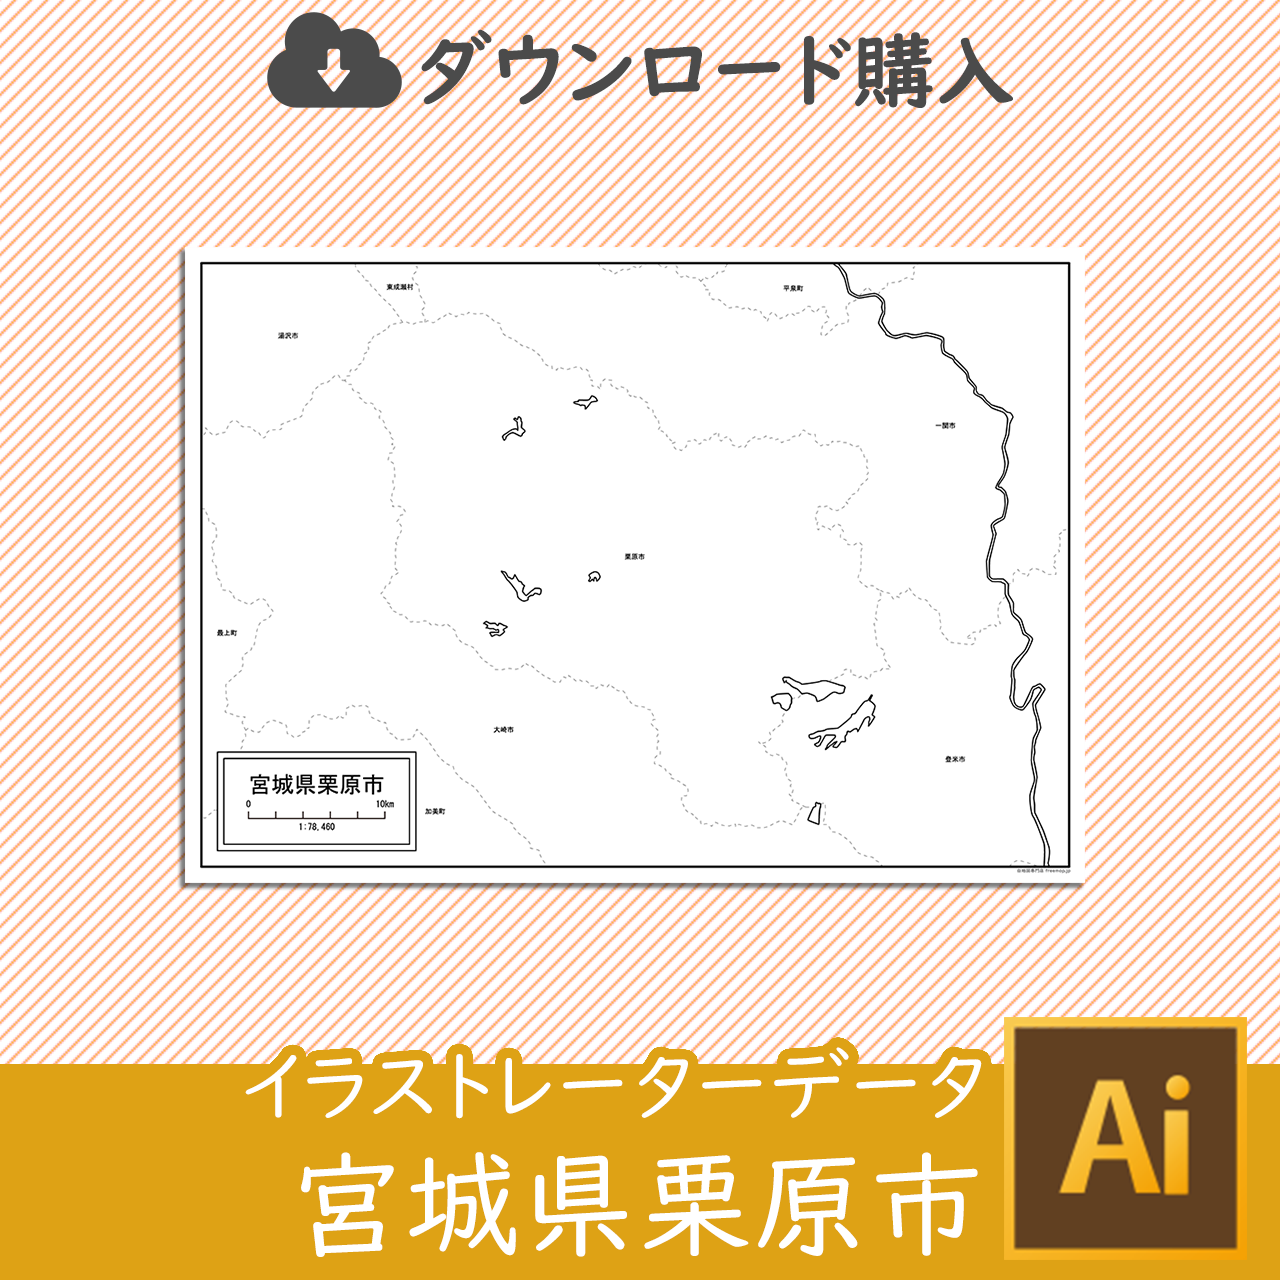 栗原市のaiデータのサムネイル画像